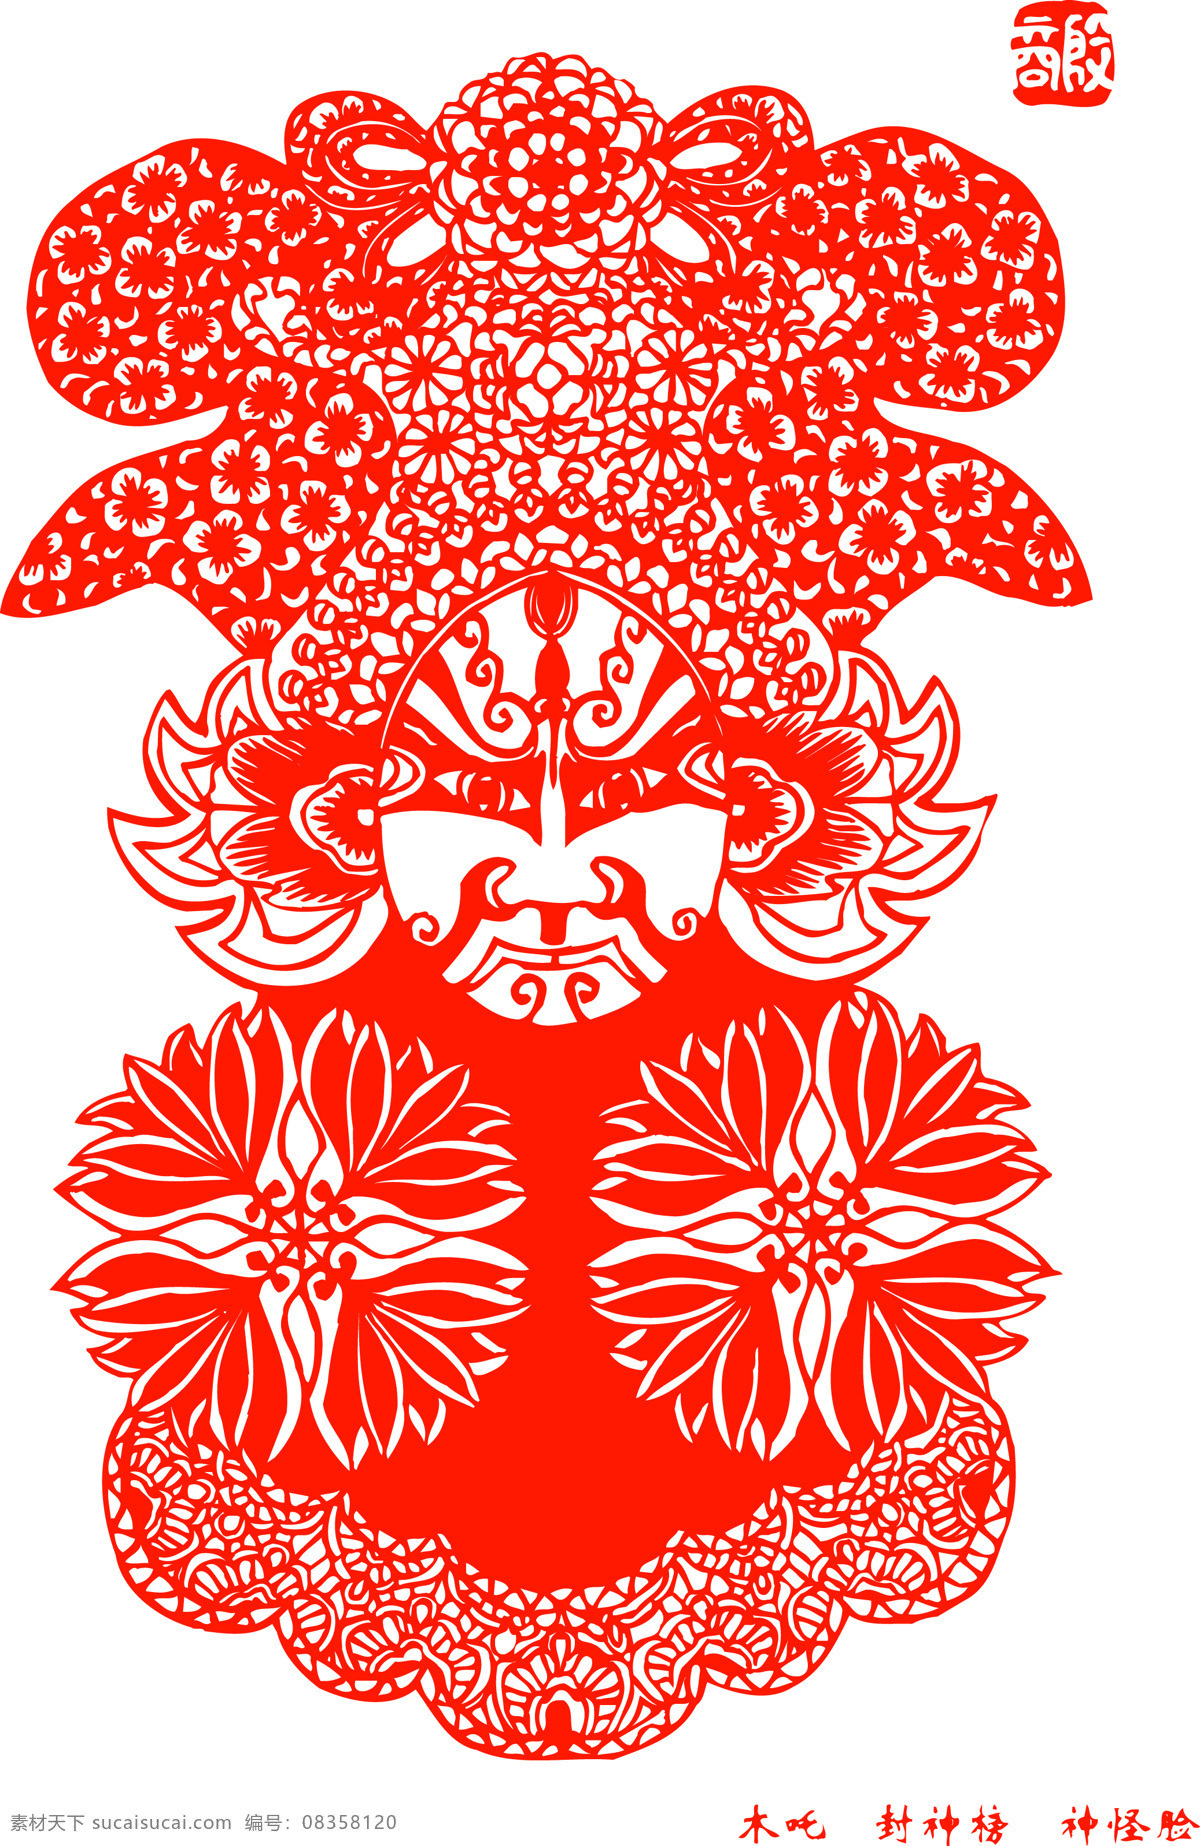 封神榜 人物 剪纸 中国 风 古典 花纹 传统 图案 剪纸艺术 民间剪纸艺术 民间画 文化艺术